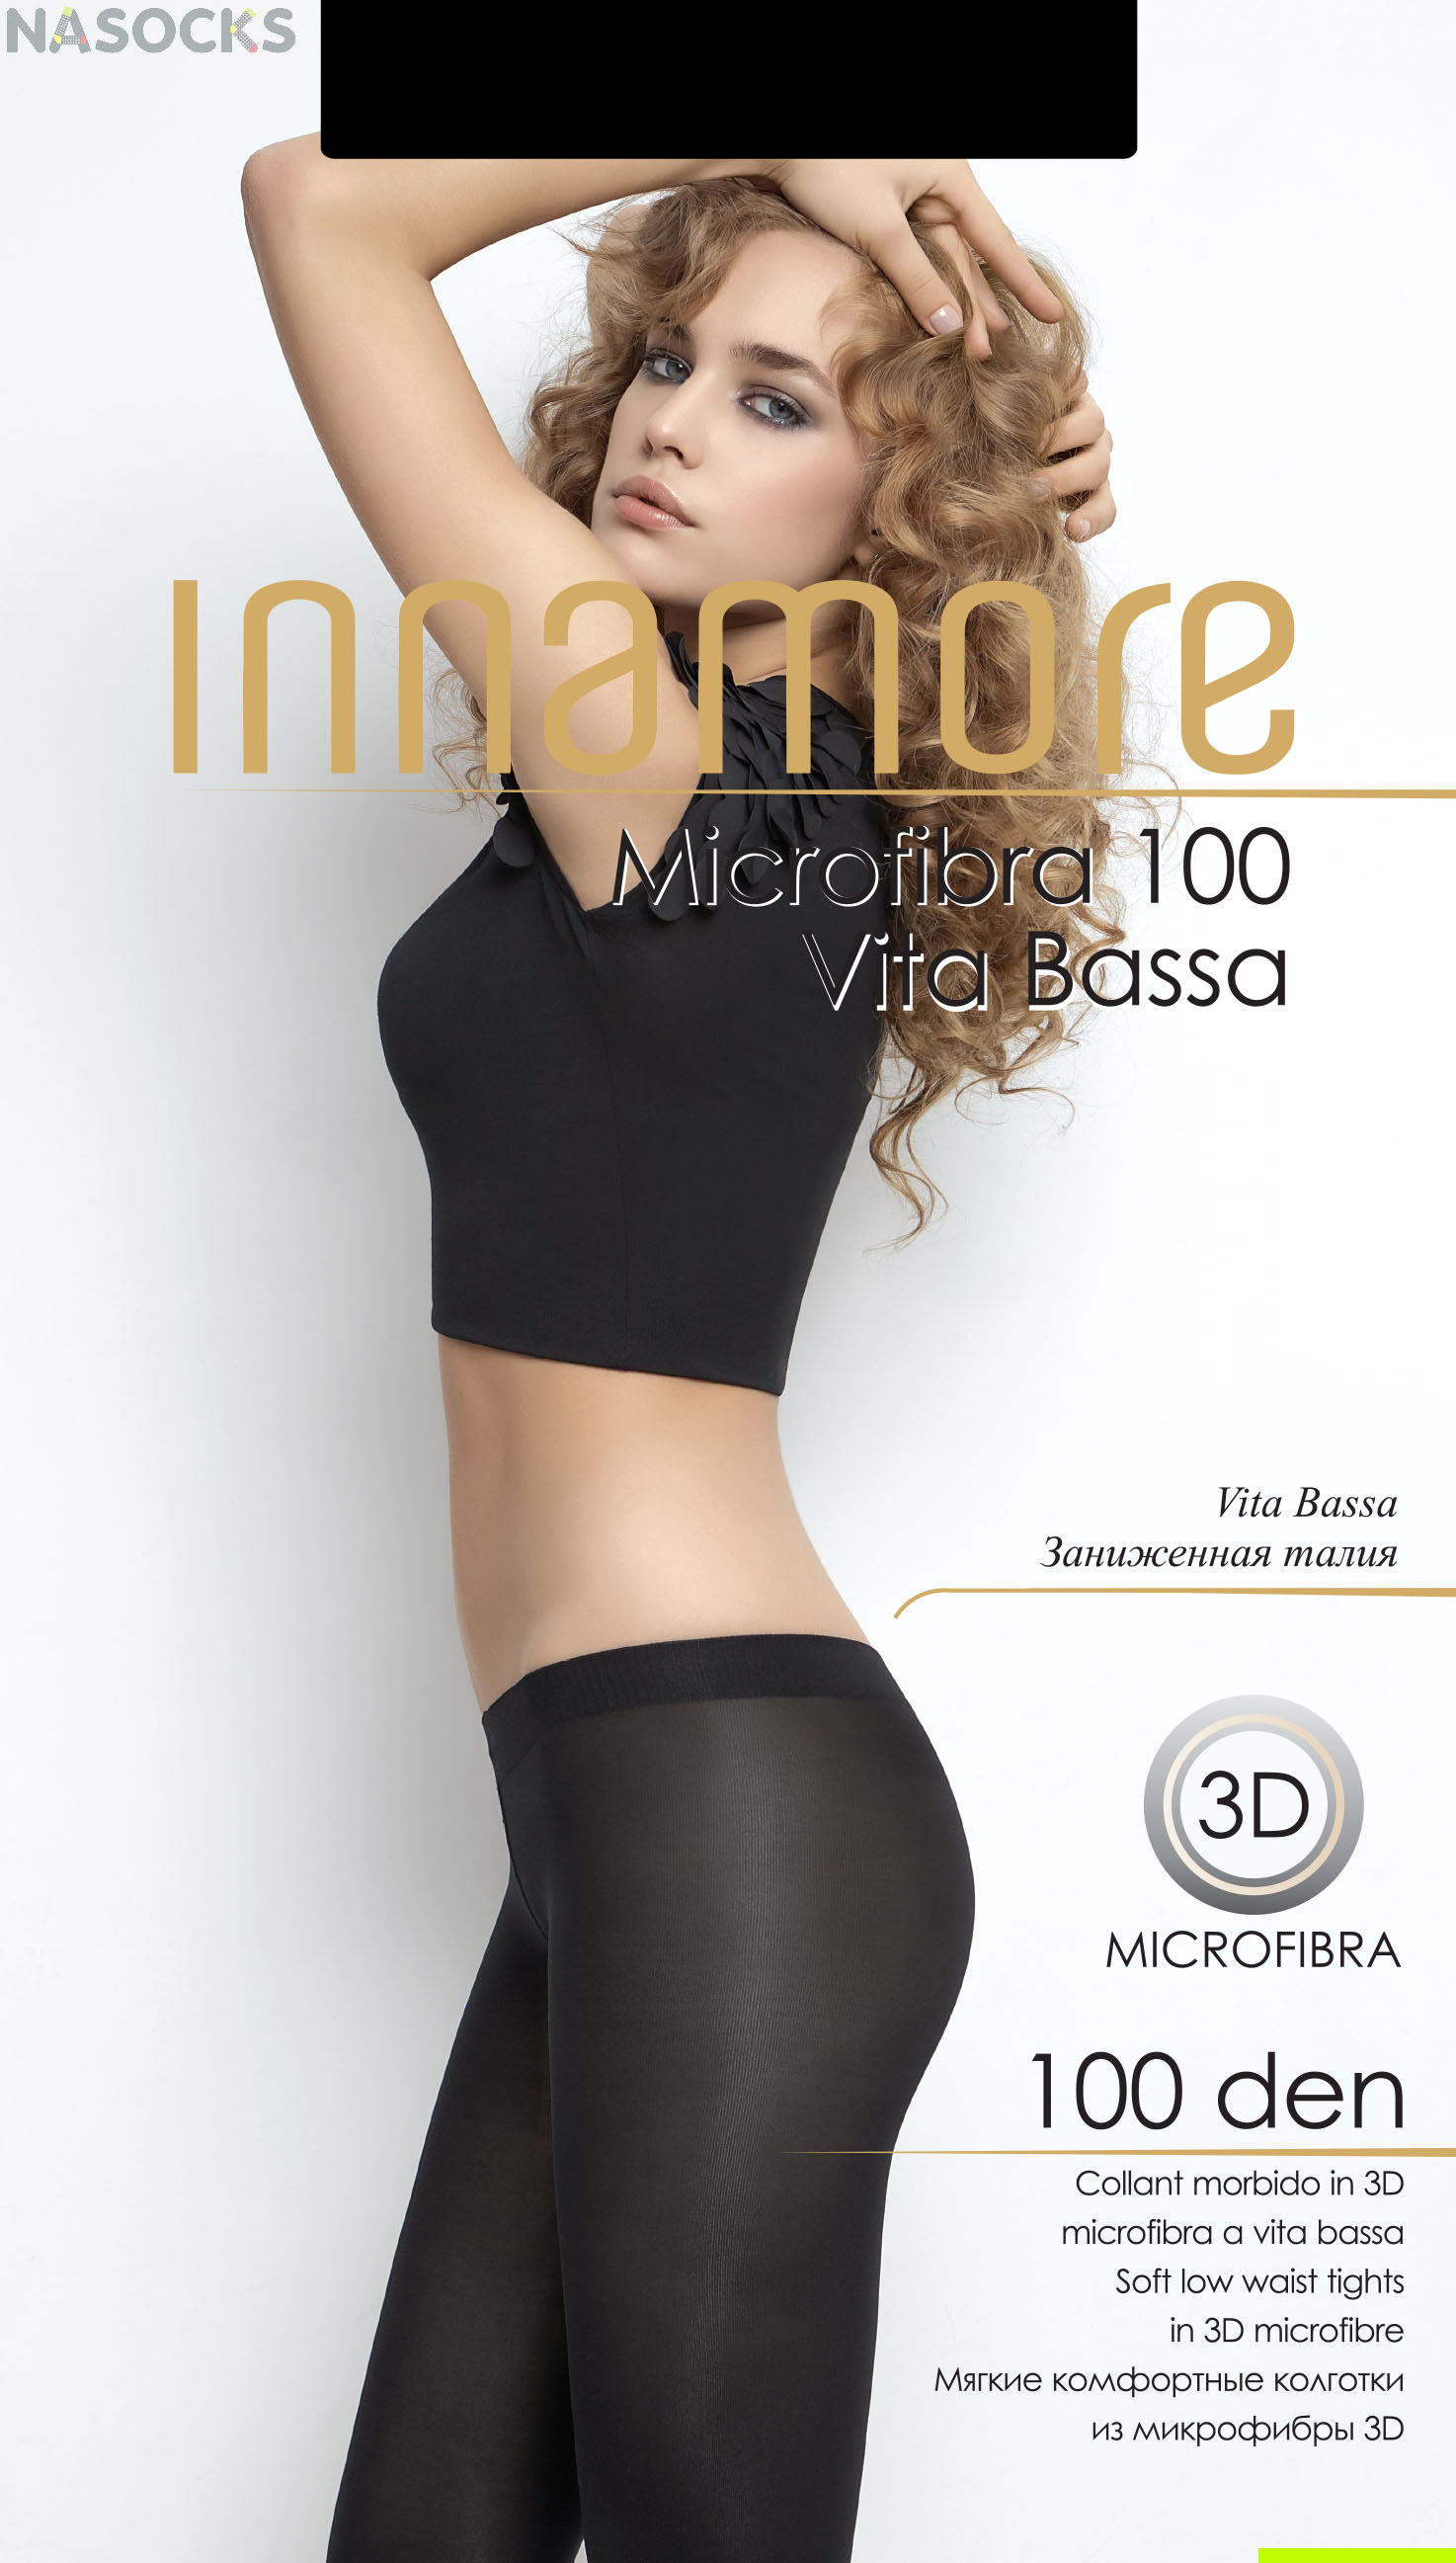 Колготки Innamore Microfibra 100 den vita bassa купить недорого в  интернет-магазине.